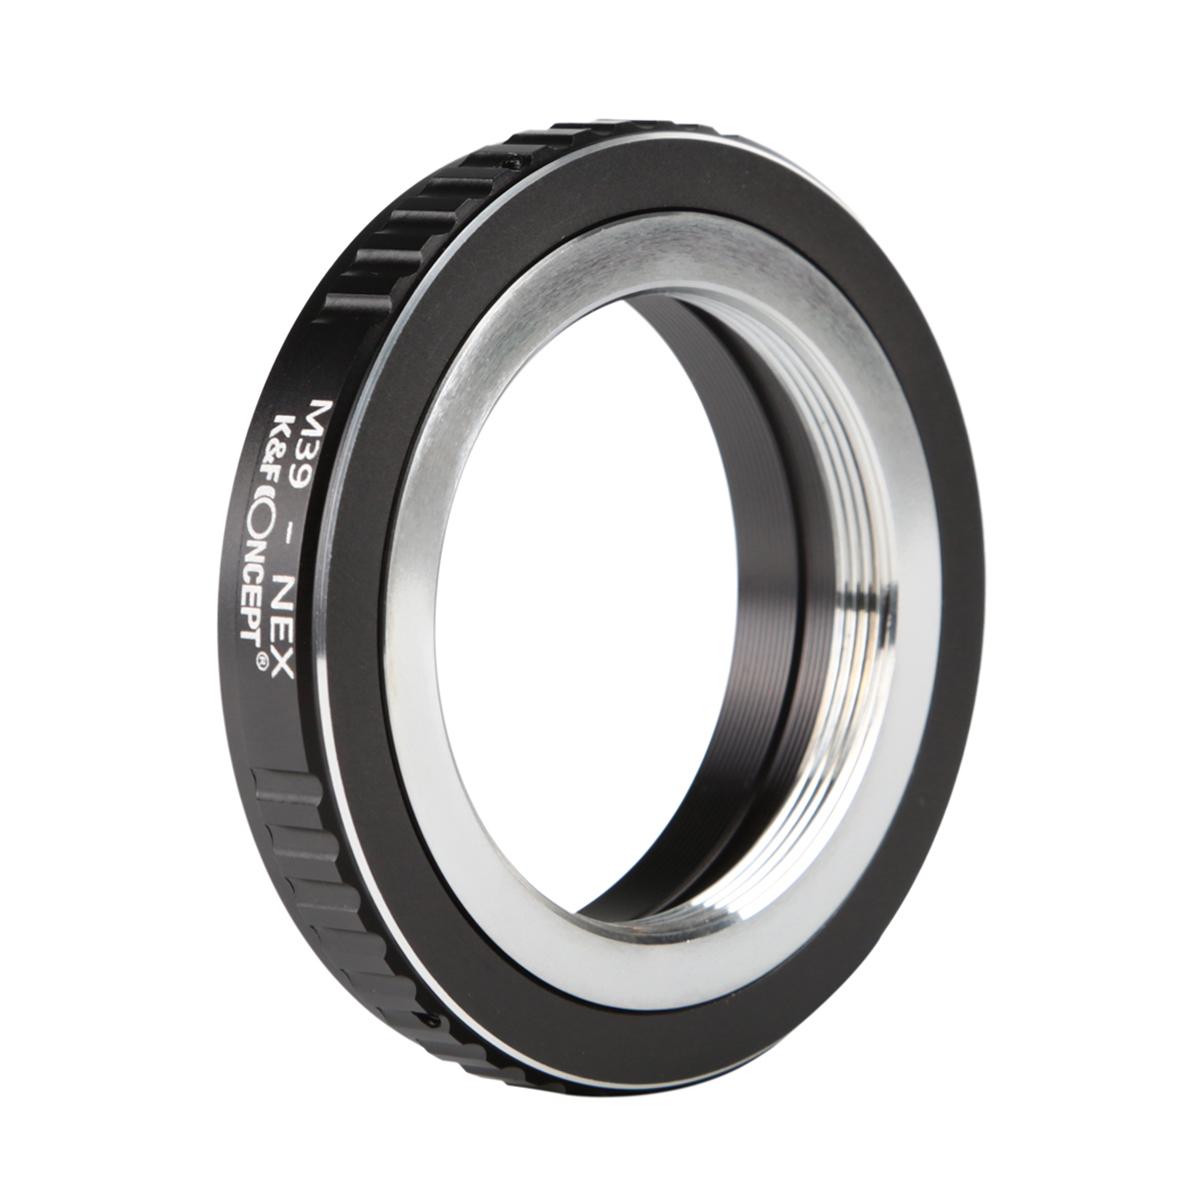 K&F Concept Lens Adapter KF06.251 for M39 - NEX